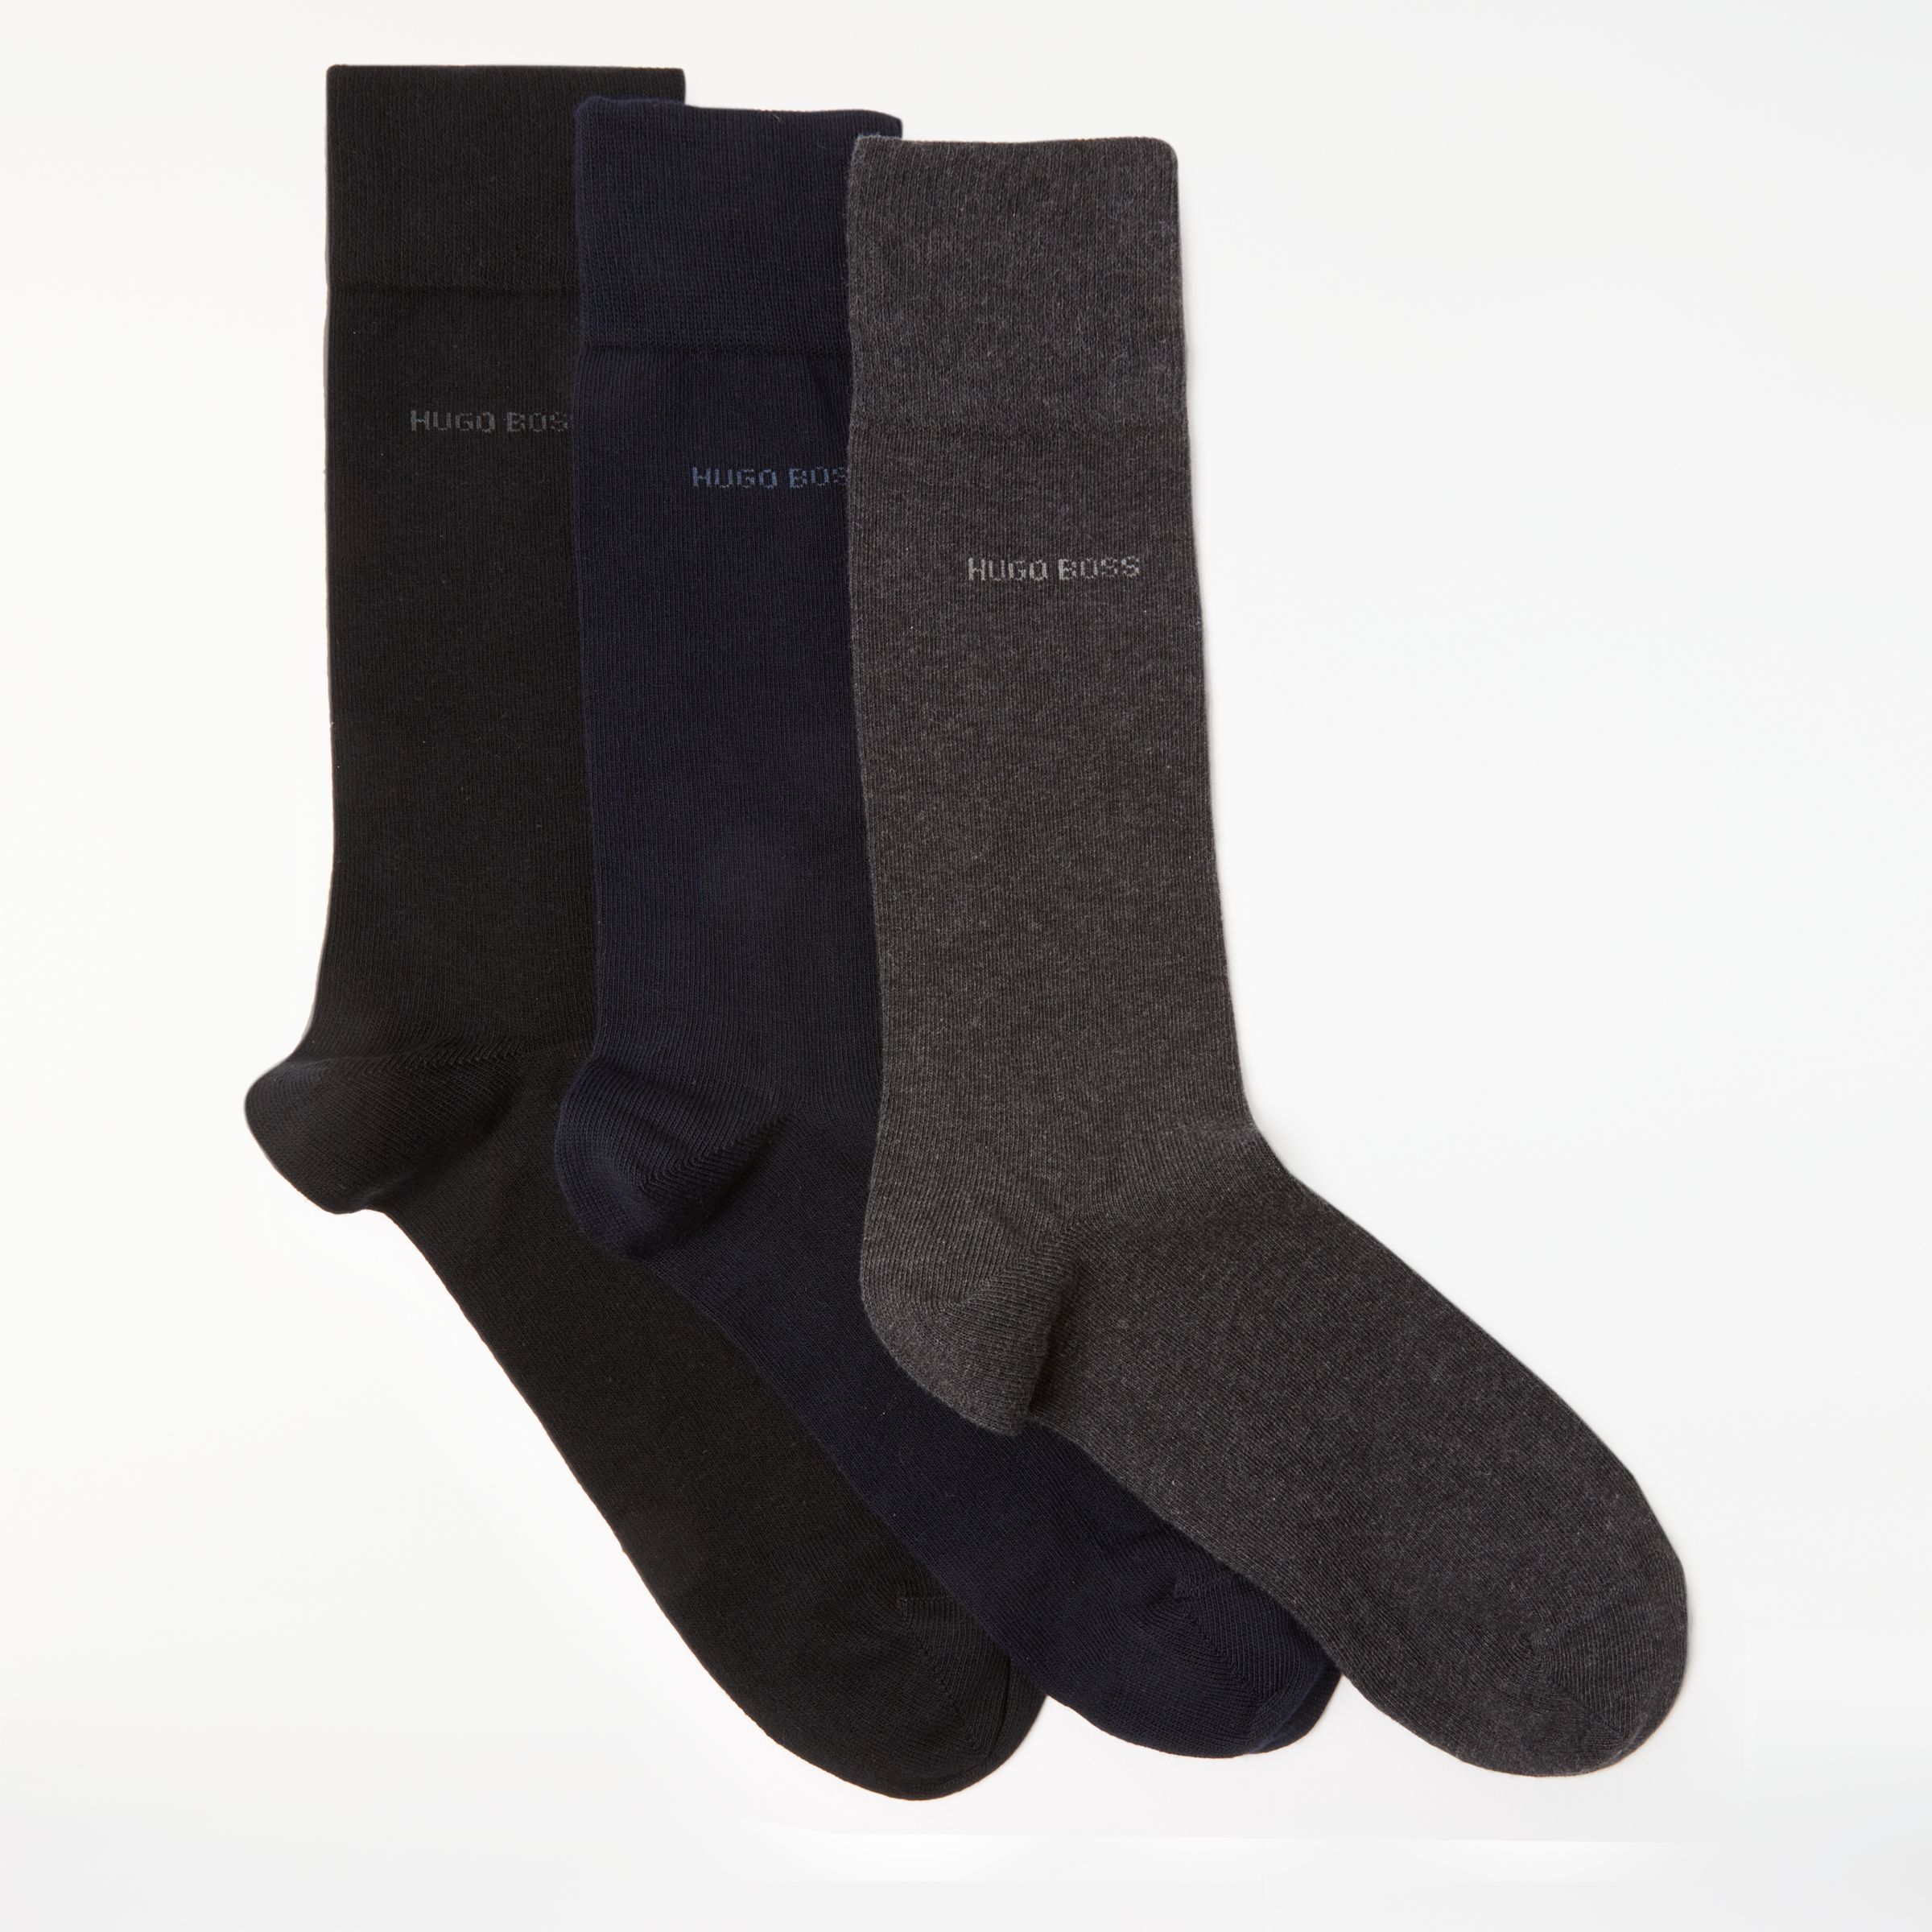 BOSS Plain Socks, One Size, Pack of 3, Black/Grey/Navy